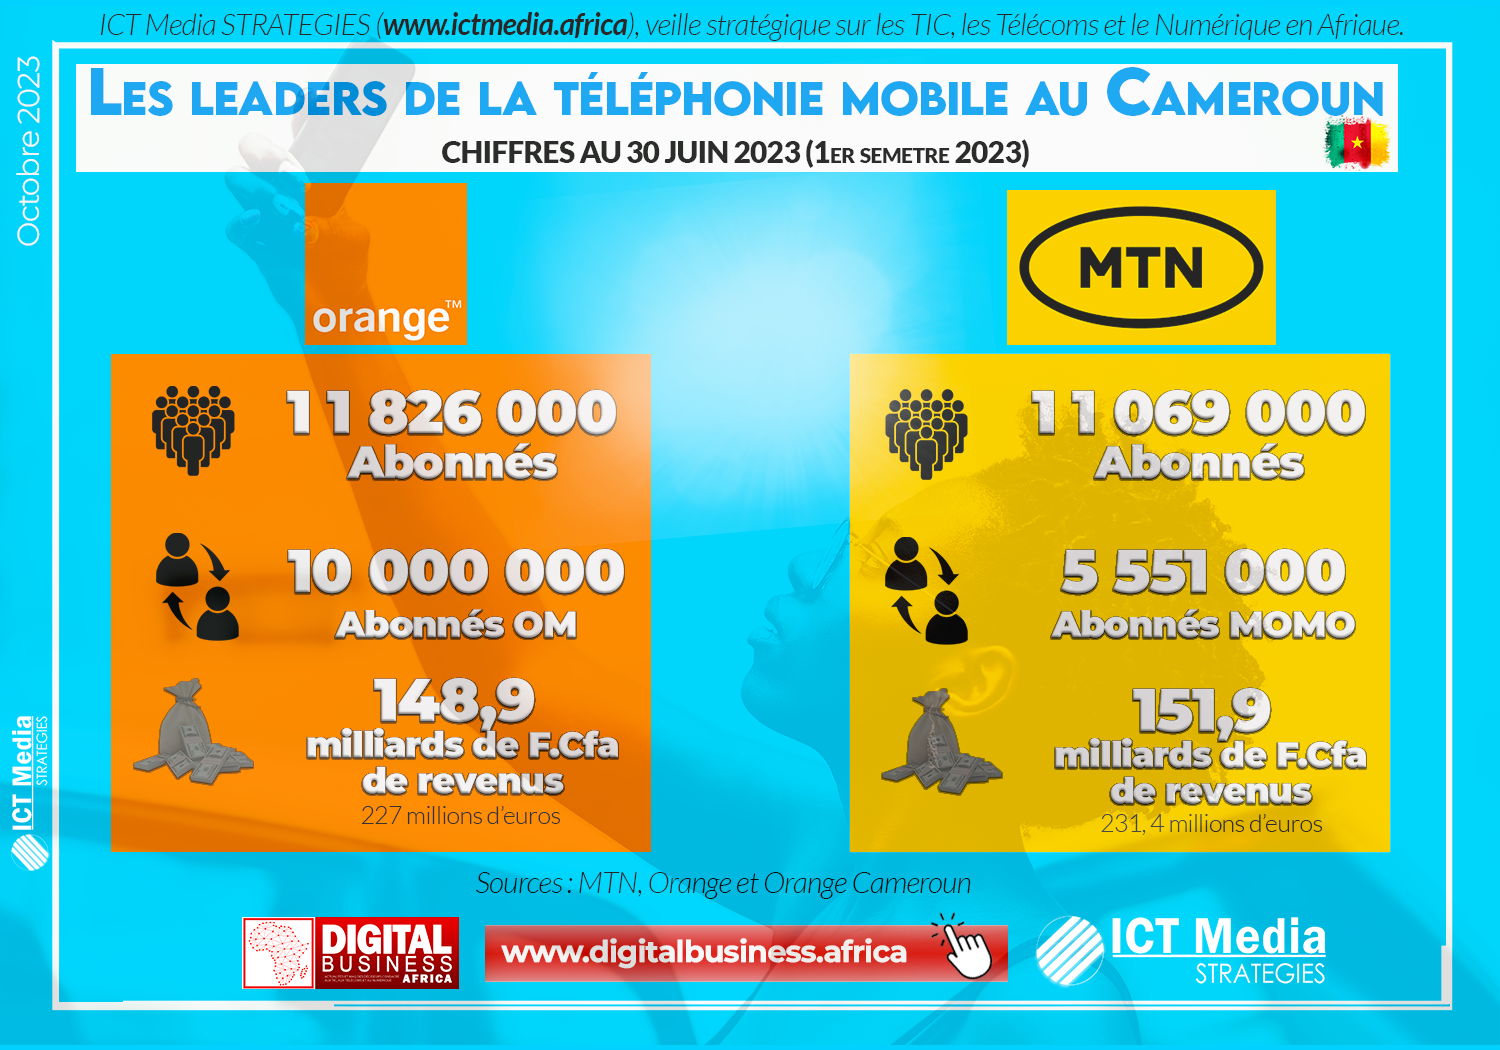 Cameroun : Orange surclasse MTN et devient leader de la téléphonie mobile avec 11,8 millions d’abonnés